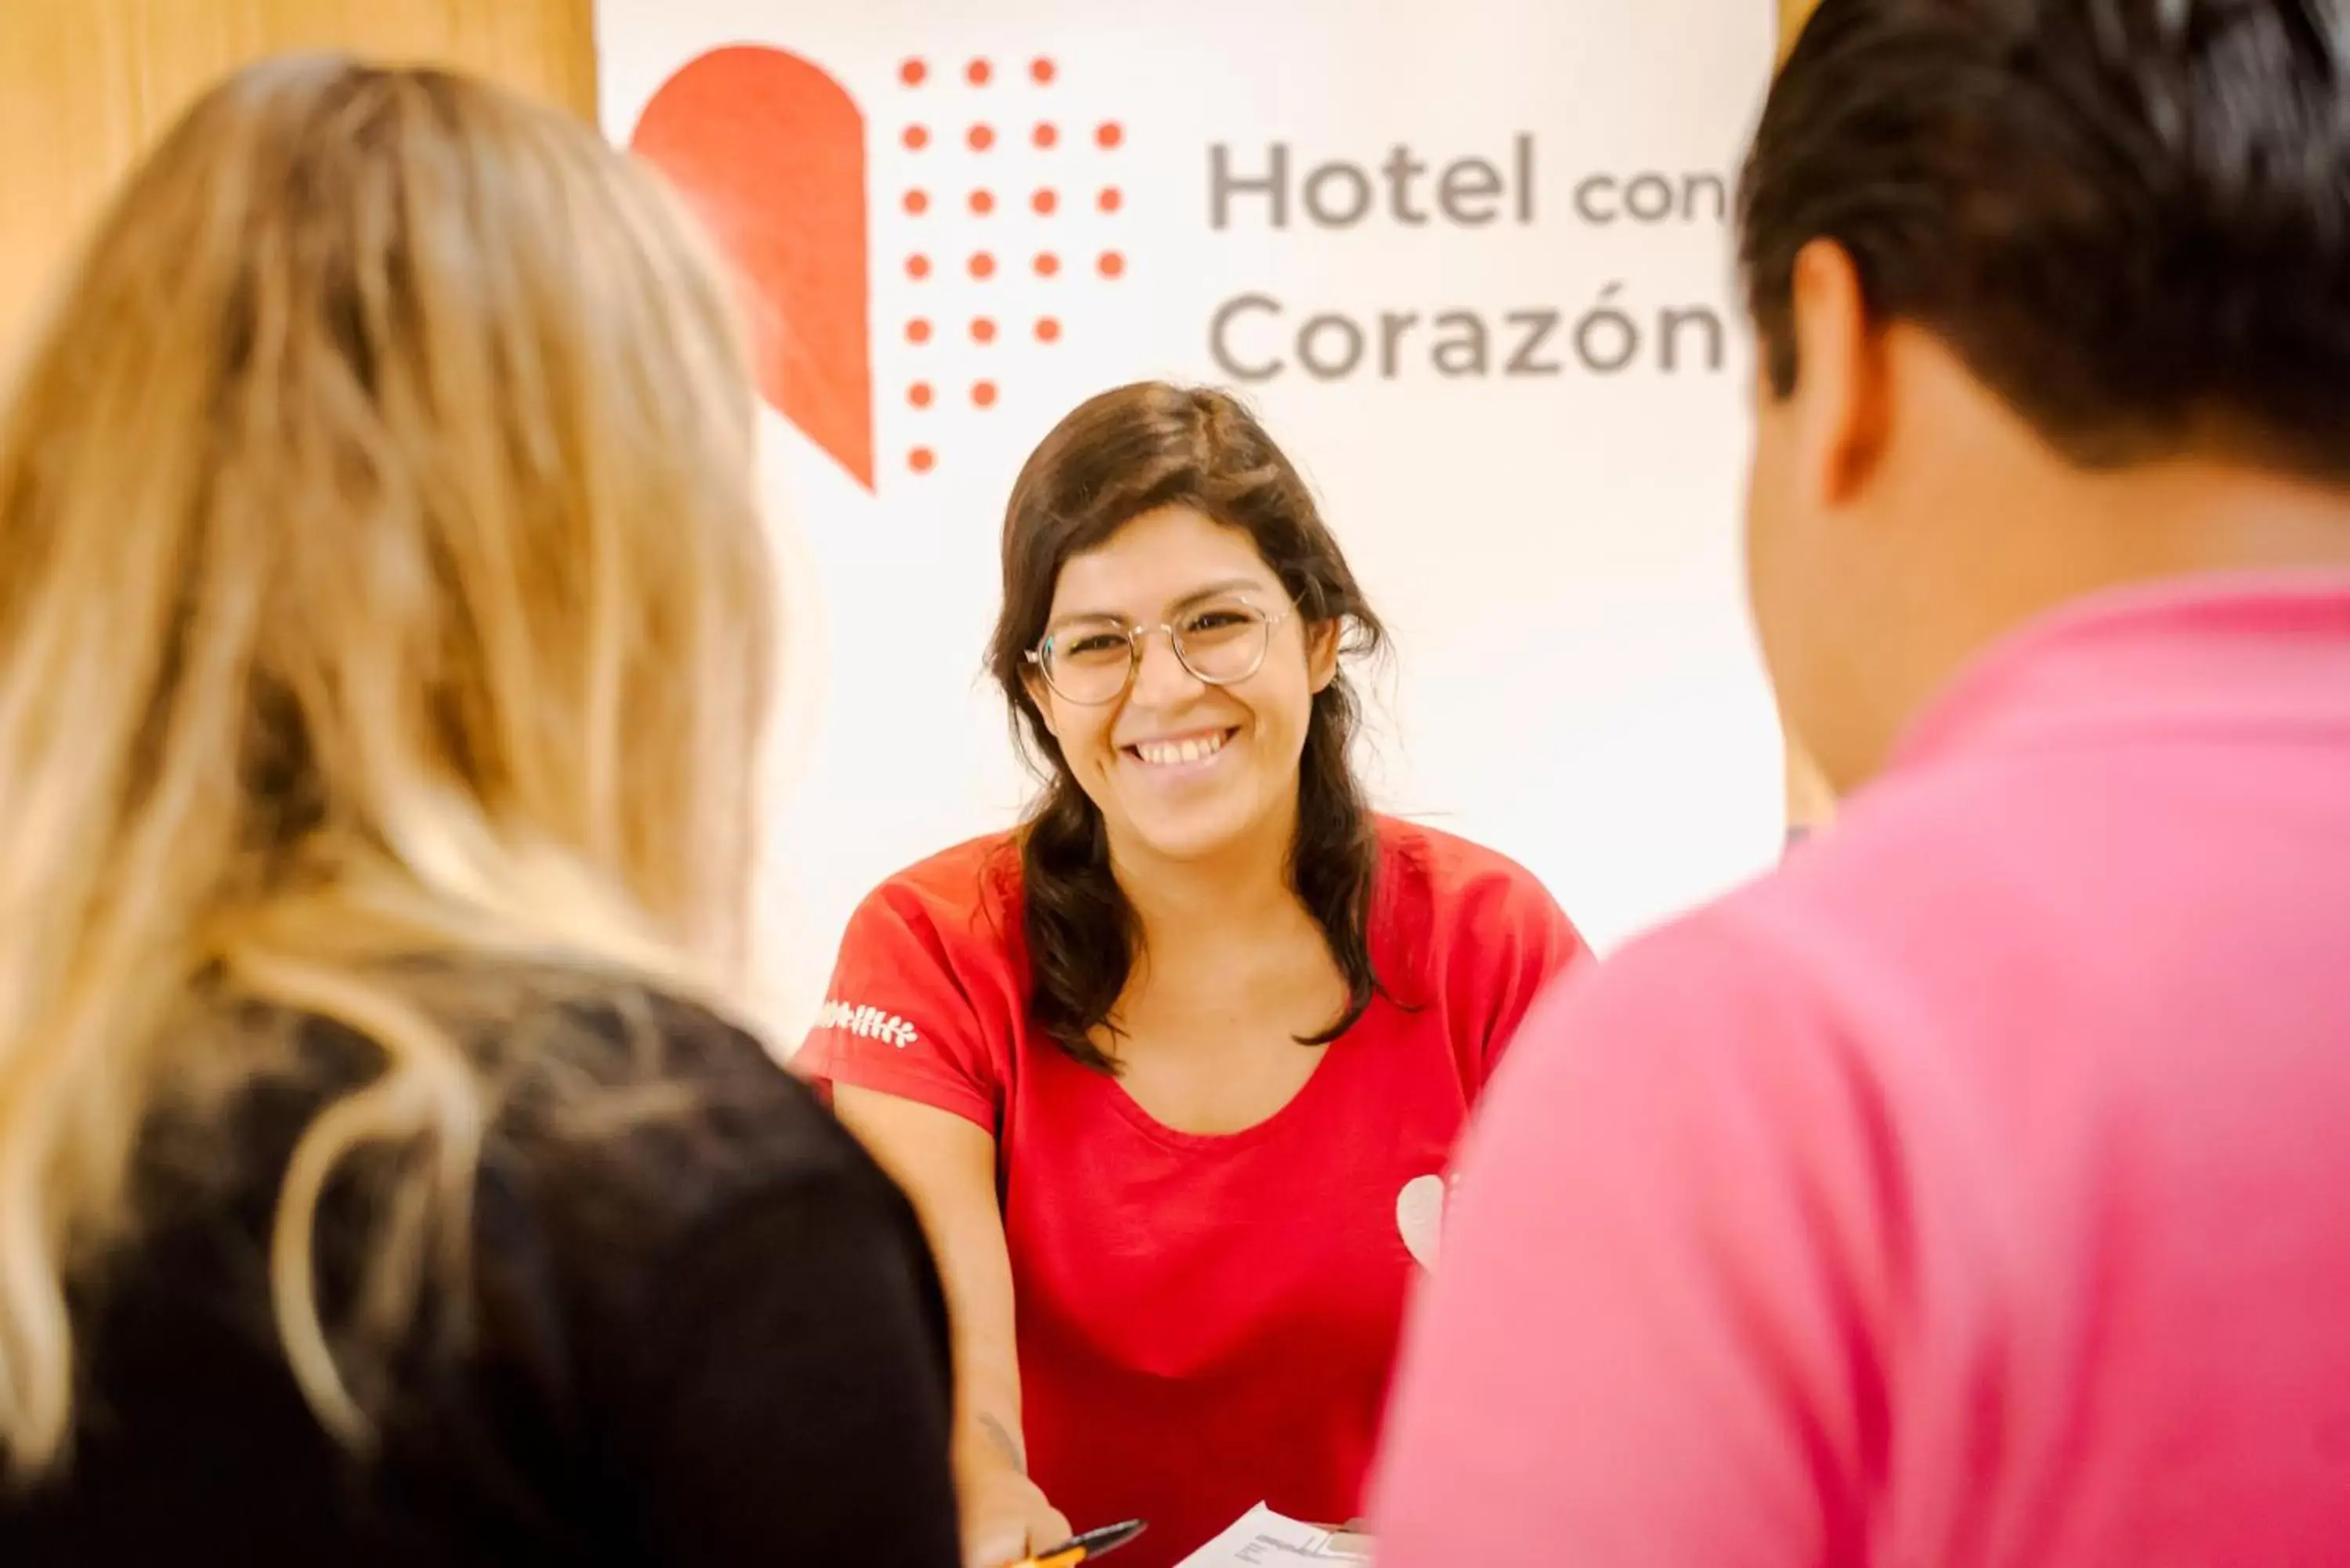 Staff, Guests in Hotel con Corazón